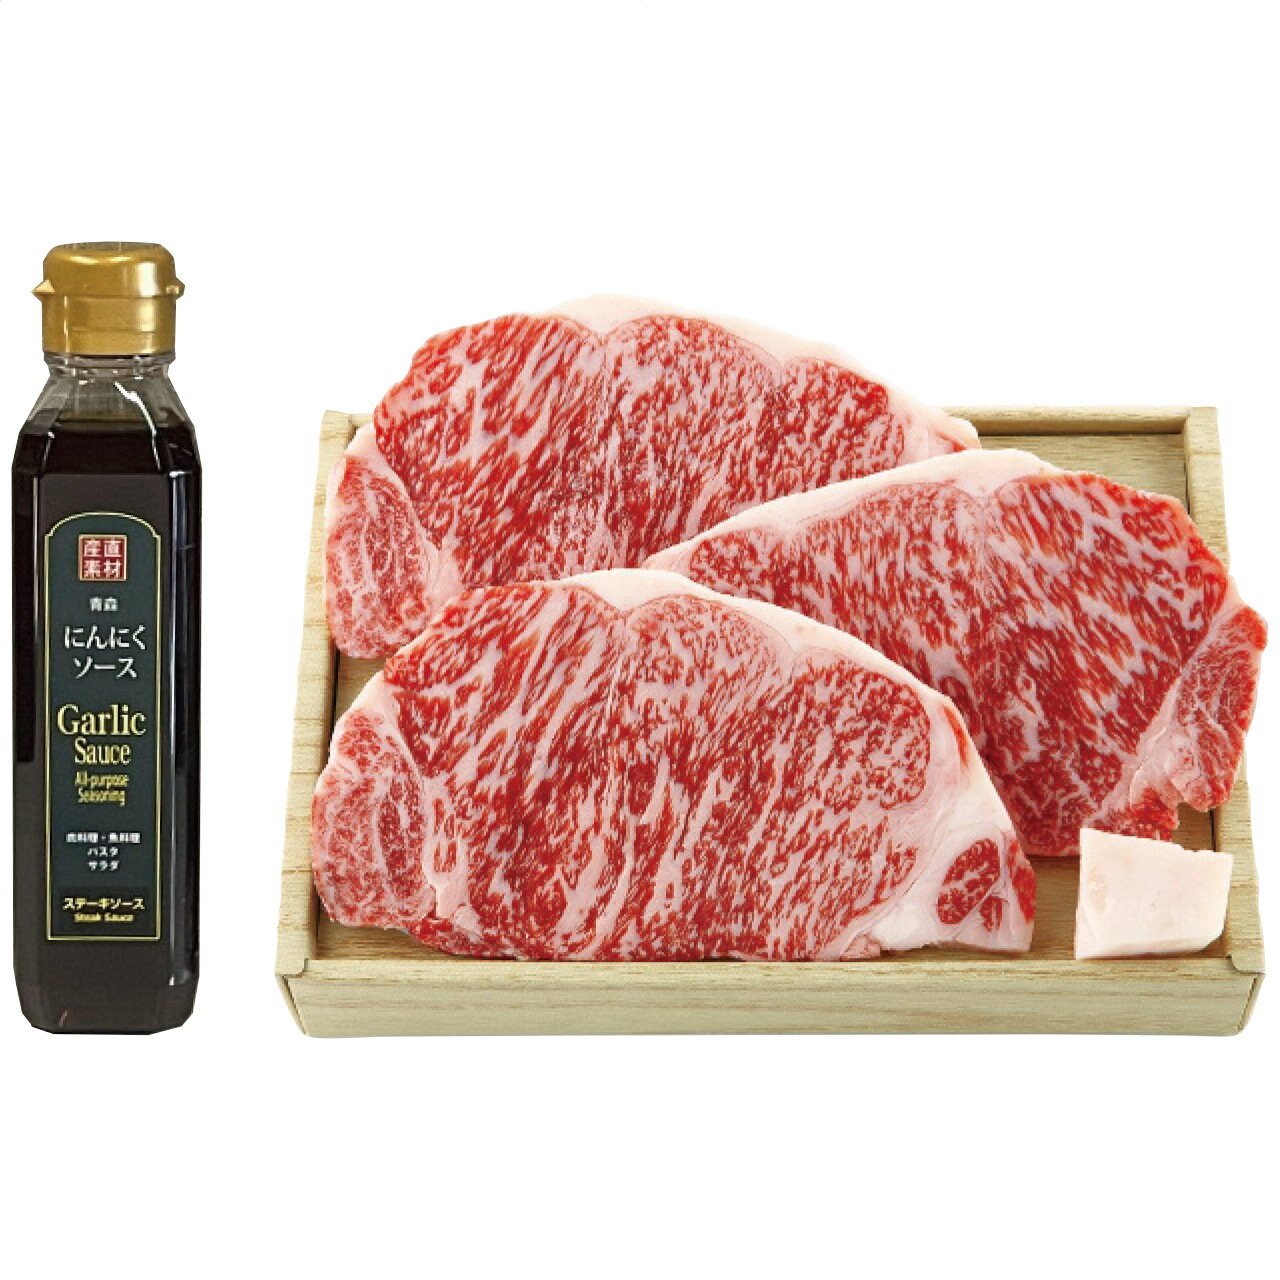 ロースステーキ(3枚)＆二反田醤油にんにくソースセット サンショク 日本製 [APD2267-020 産直]| 肉食品 精肉・肉加工品 肉類